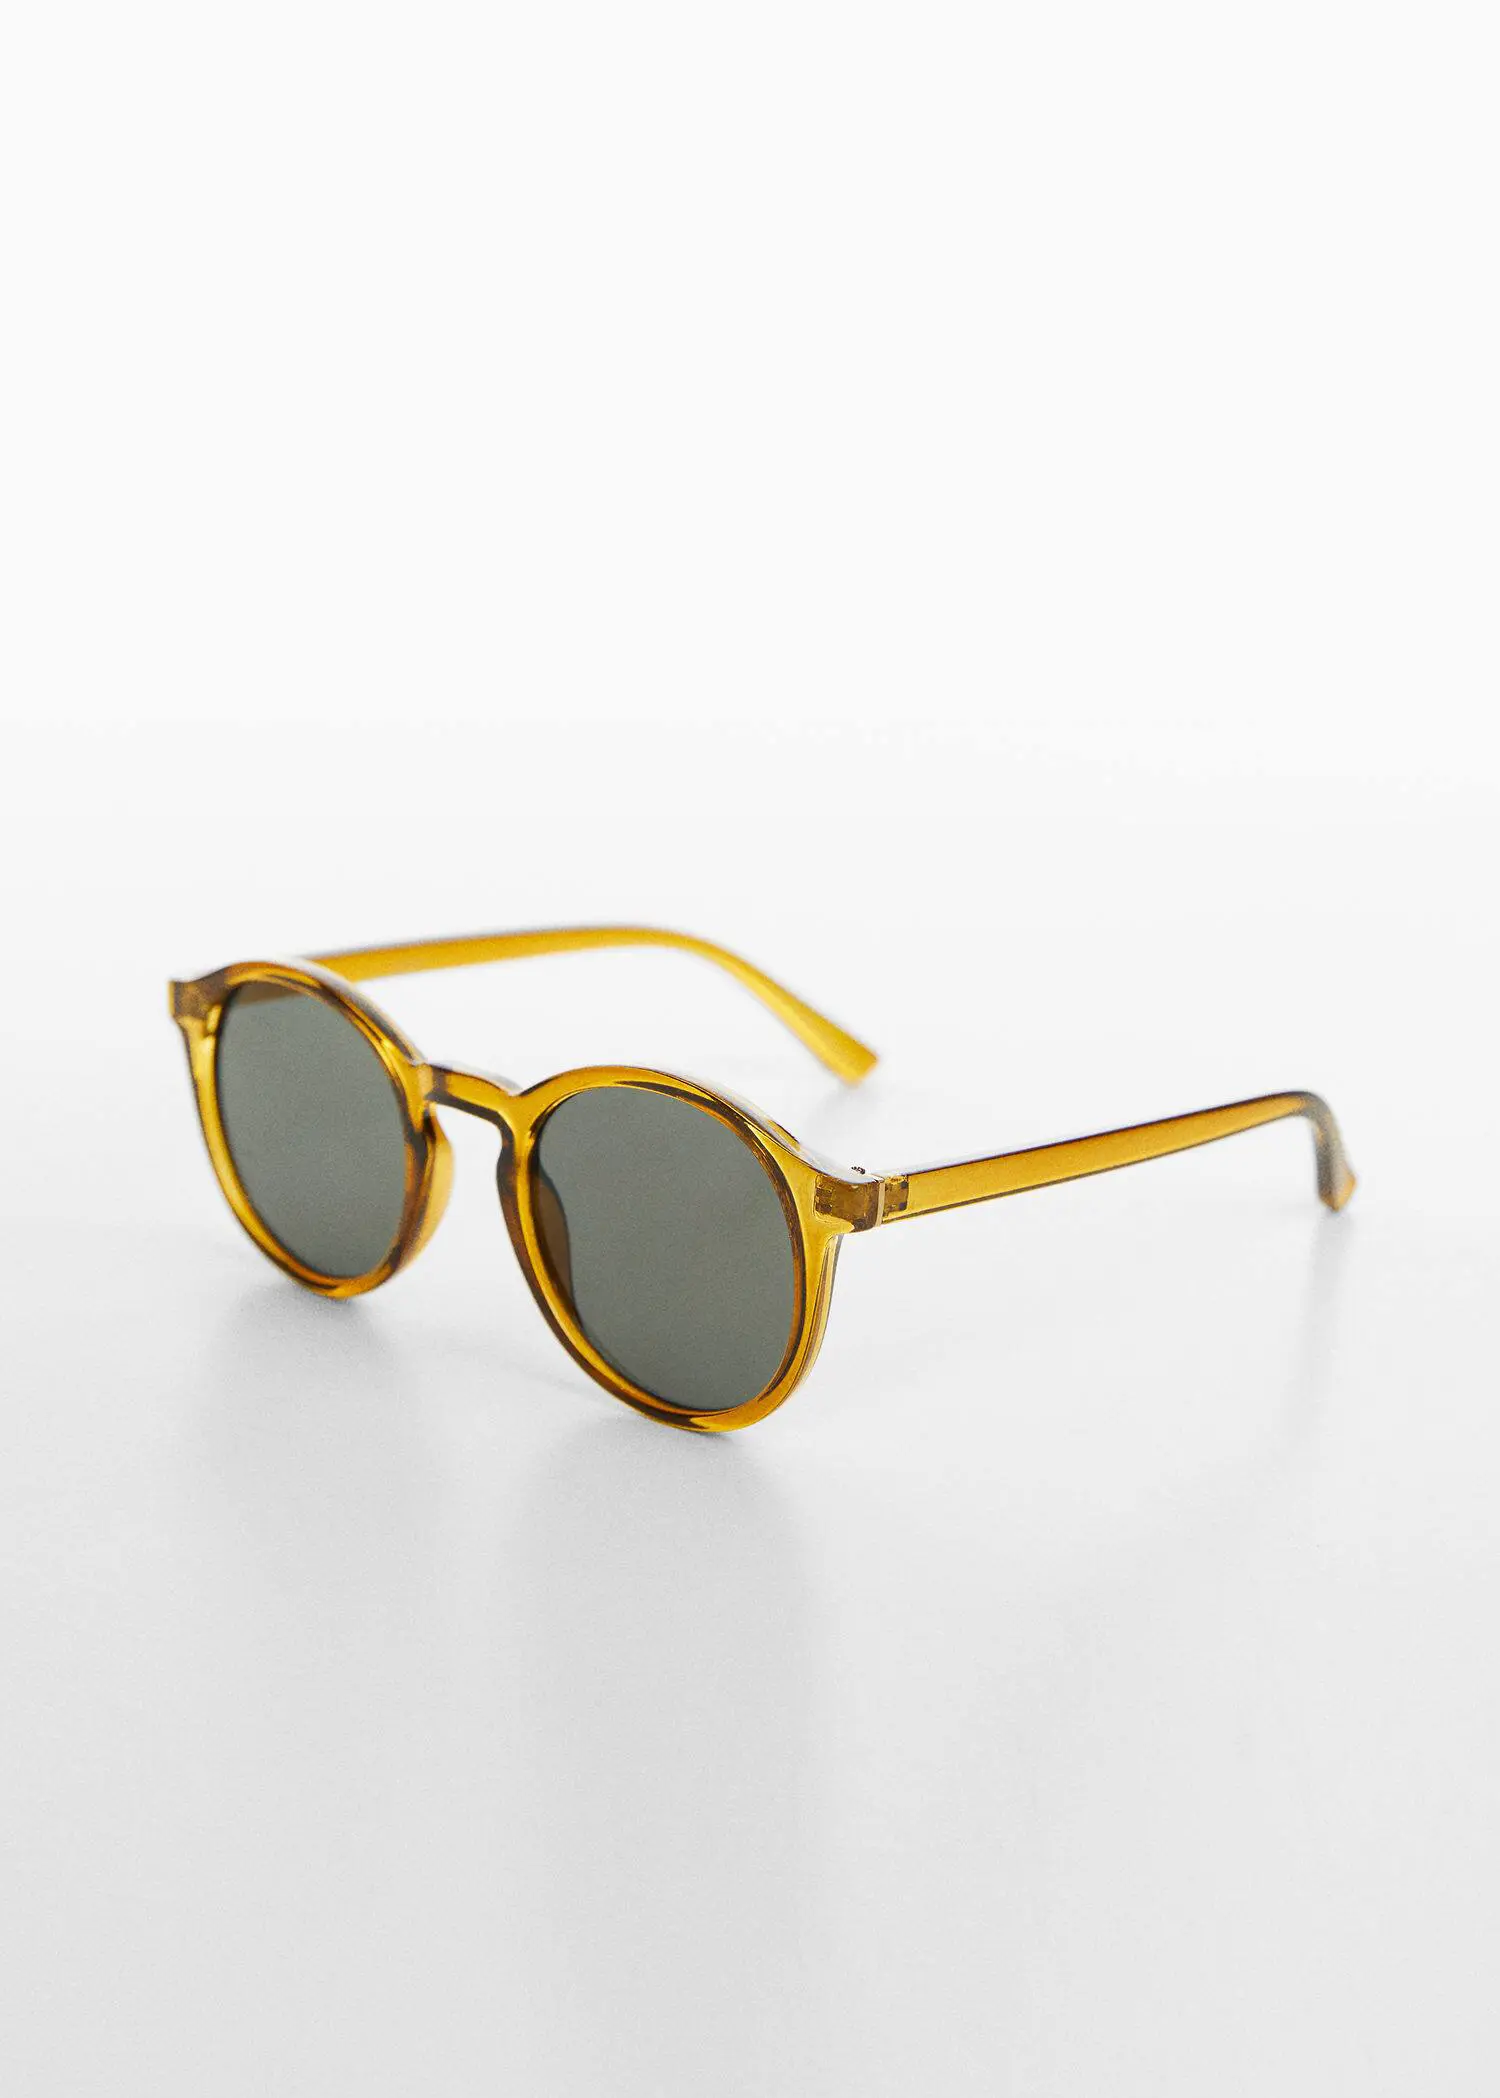 Mango Polarized sunglasses. 2